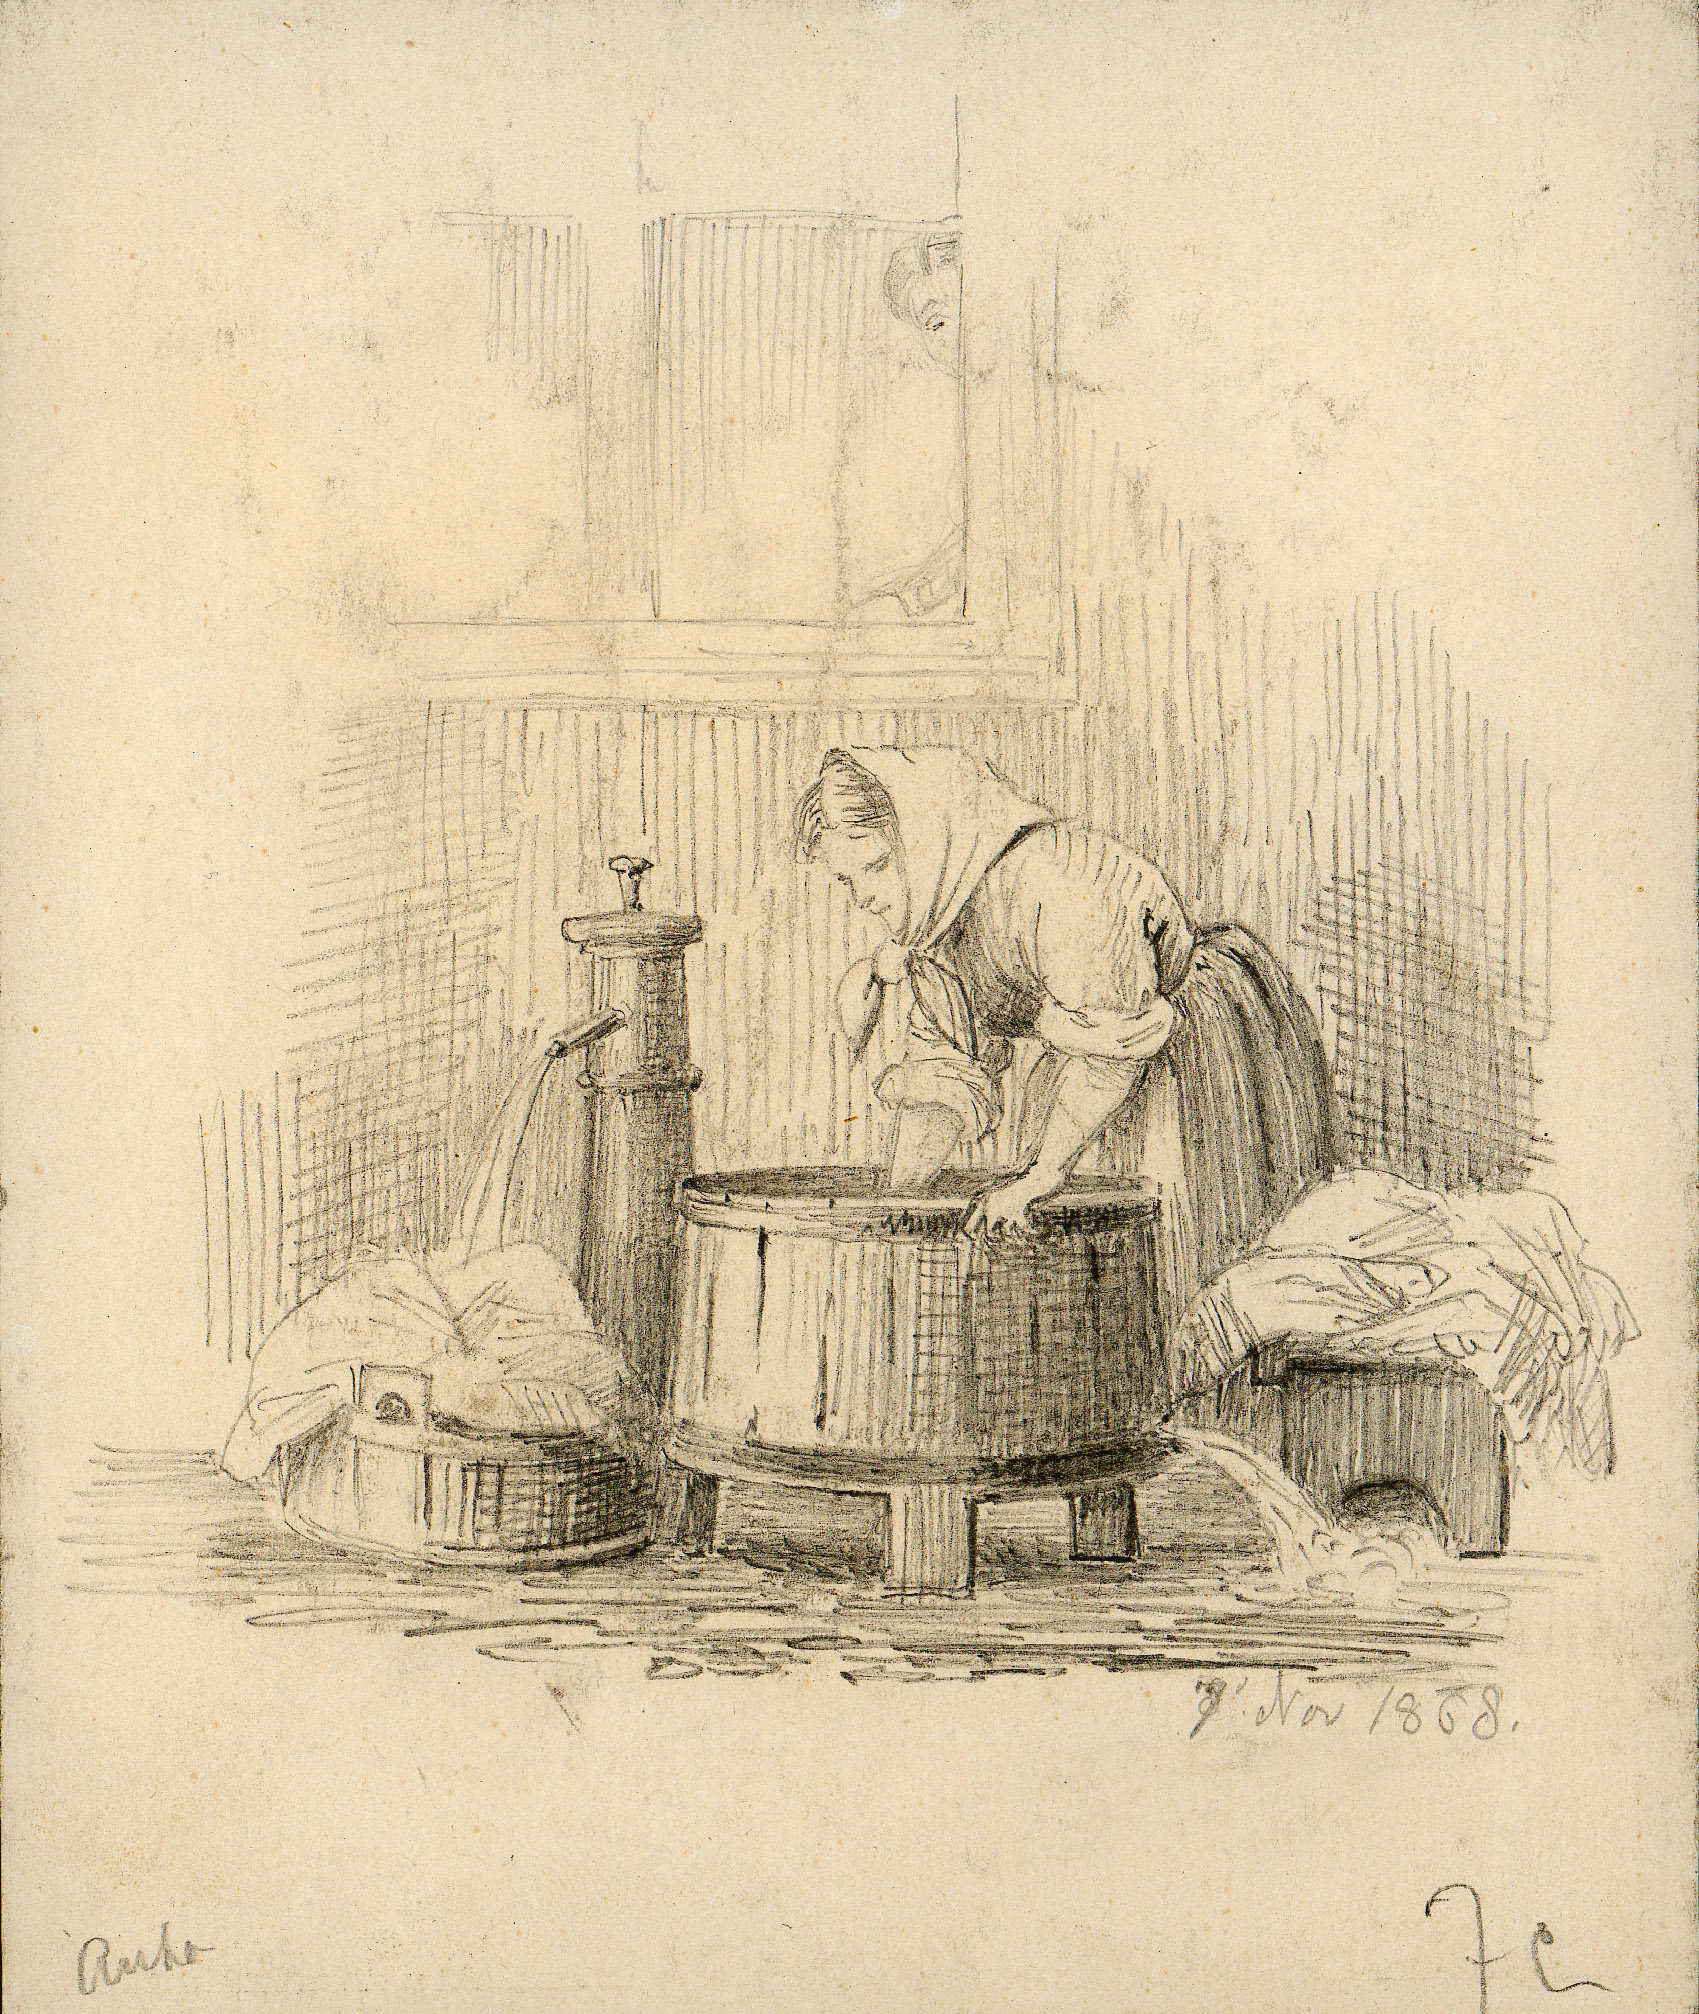 Ei dame skyller klær ved en vannpost. November, 1868.